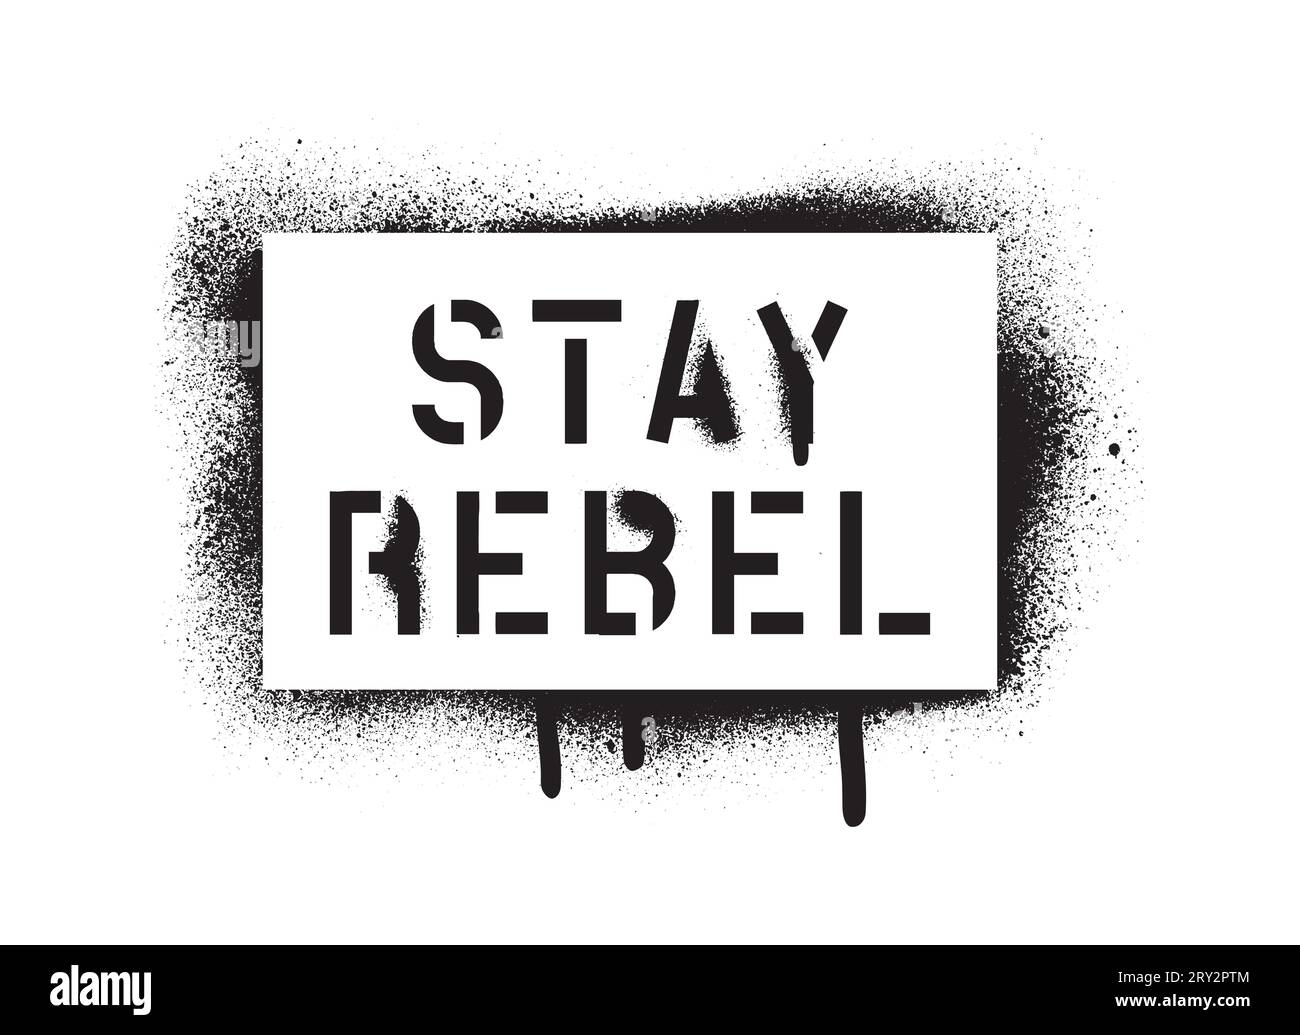 REBEL-Angebot BLEIBEN. Sprühen Sie Graffiti-Schablone mit reichlich austretendem Leck. Eine Botschaft für jede persönliche oder kollektive Rebellion oder Unzufriedenheit. Stock Vektor